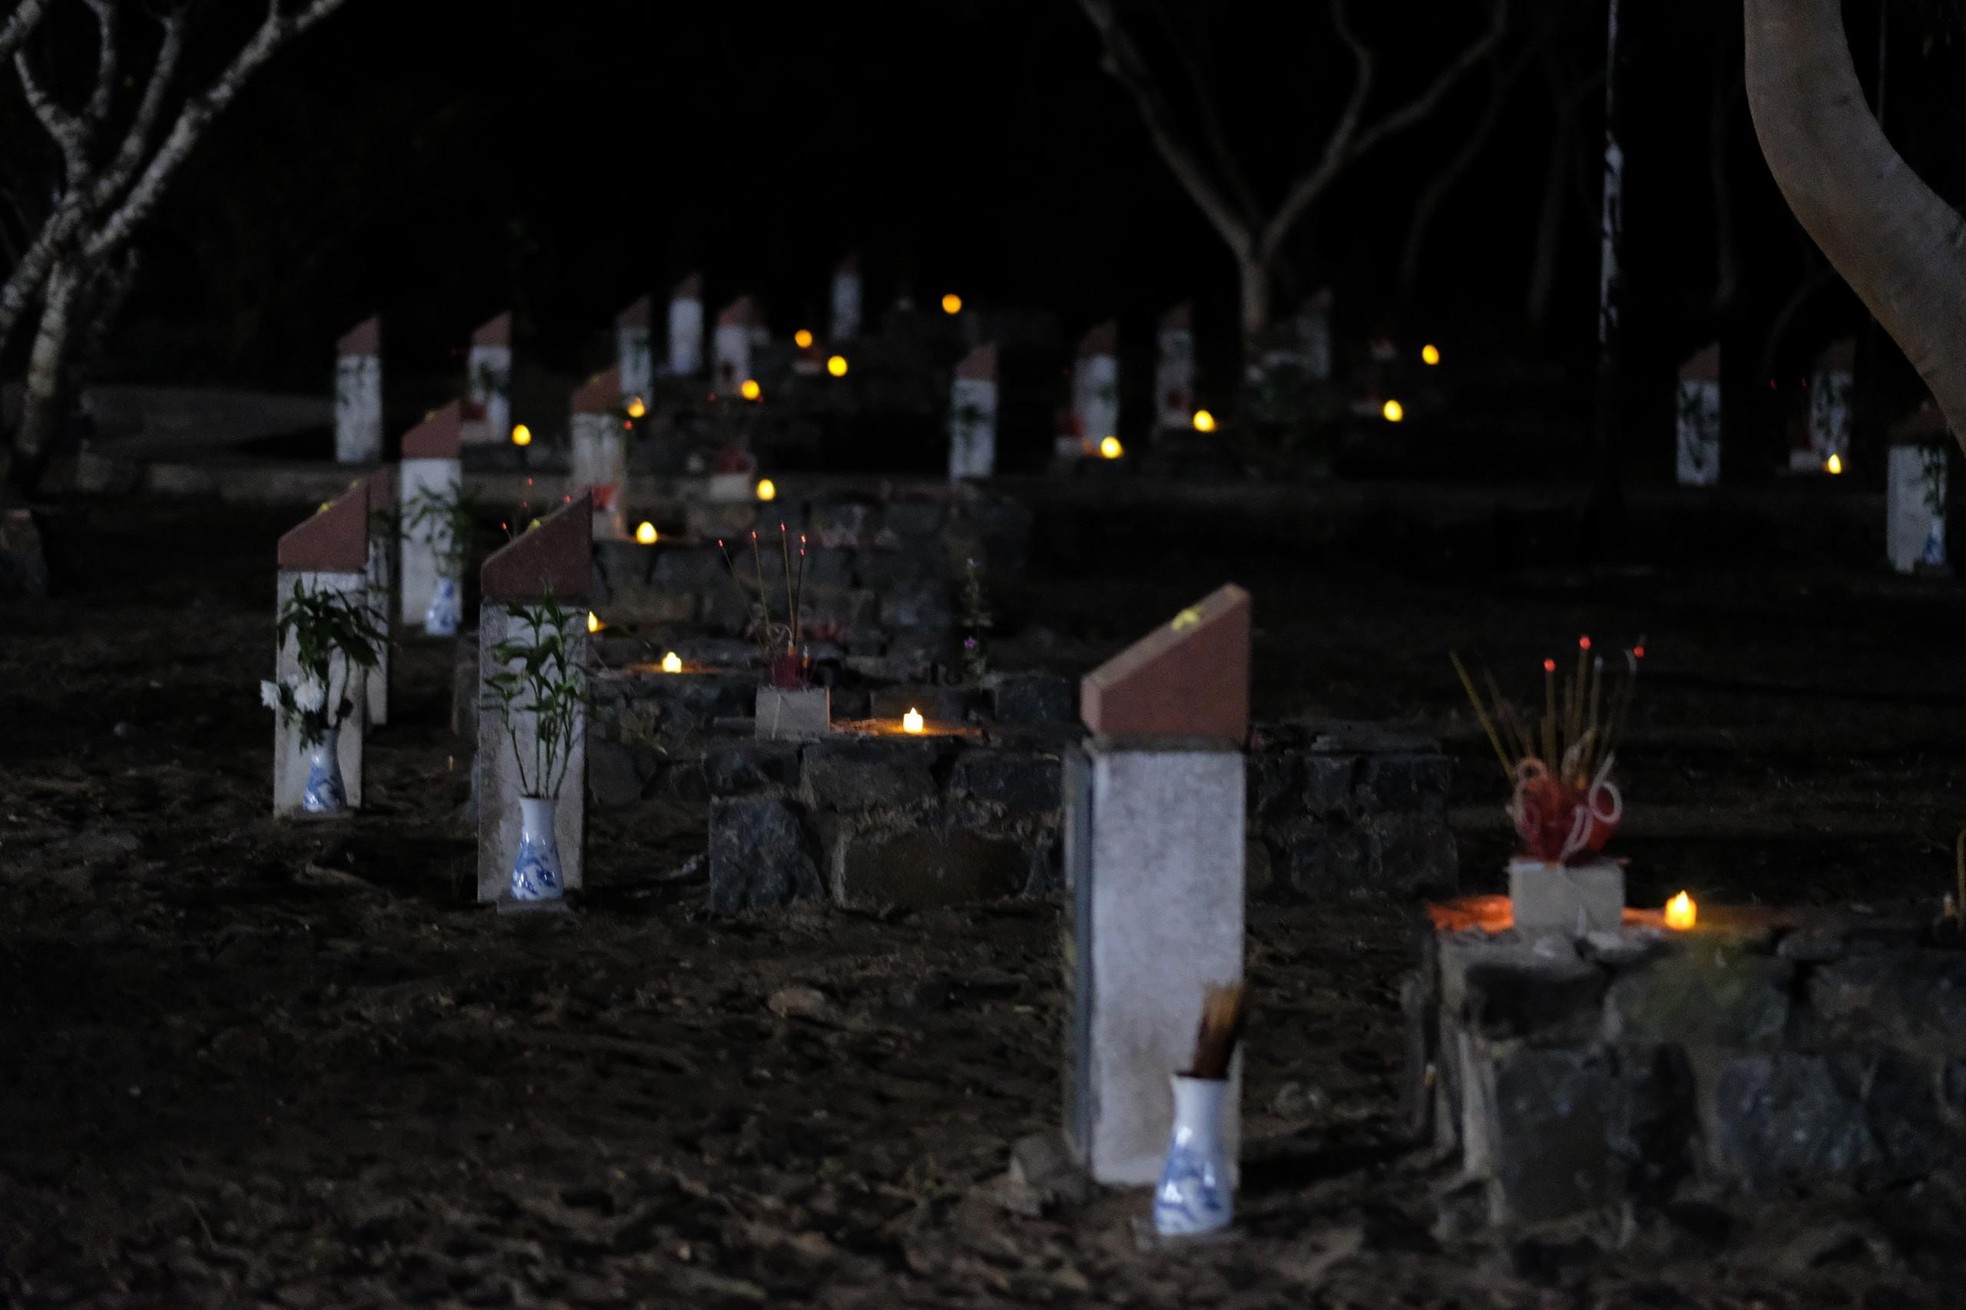 Xúc động hình ảnh những ngọn nến trong đêm ở Nghĩa trang Hàng Dương ảnh 13